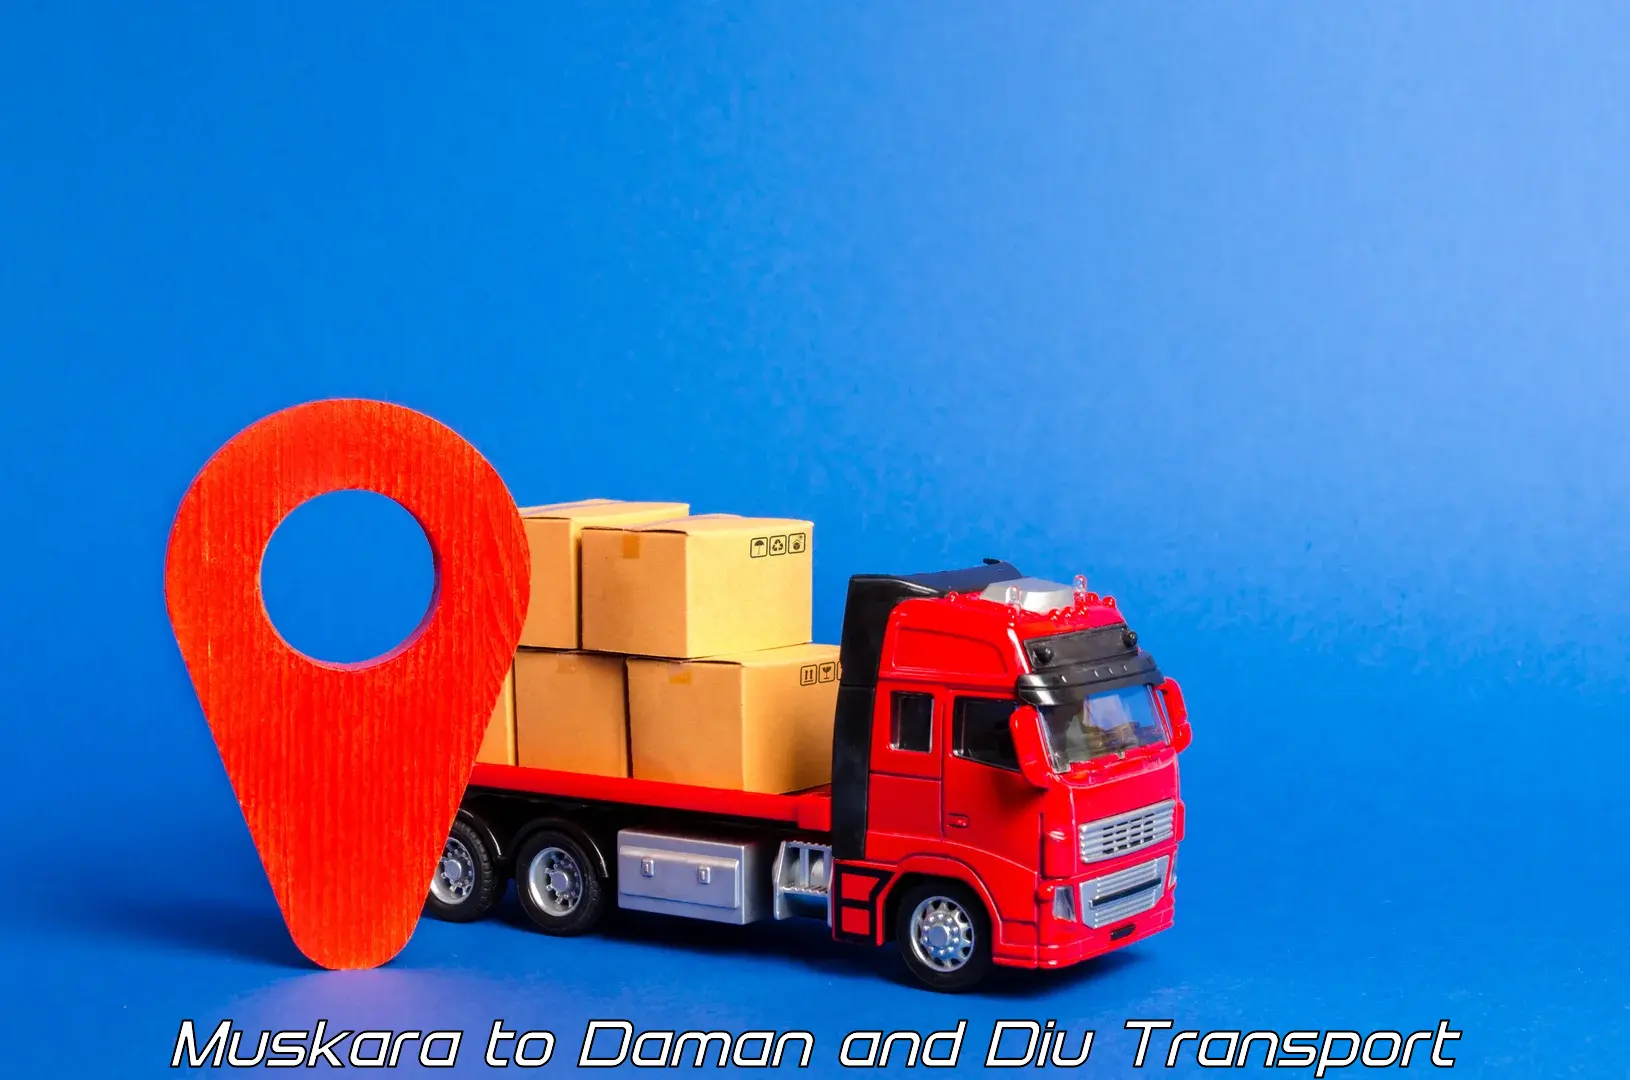 Online transport service Muskara to Daman and Diu